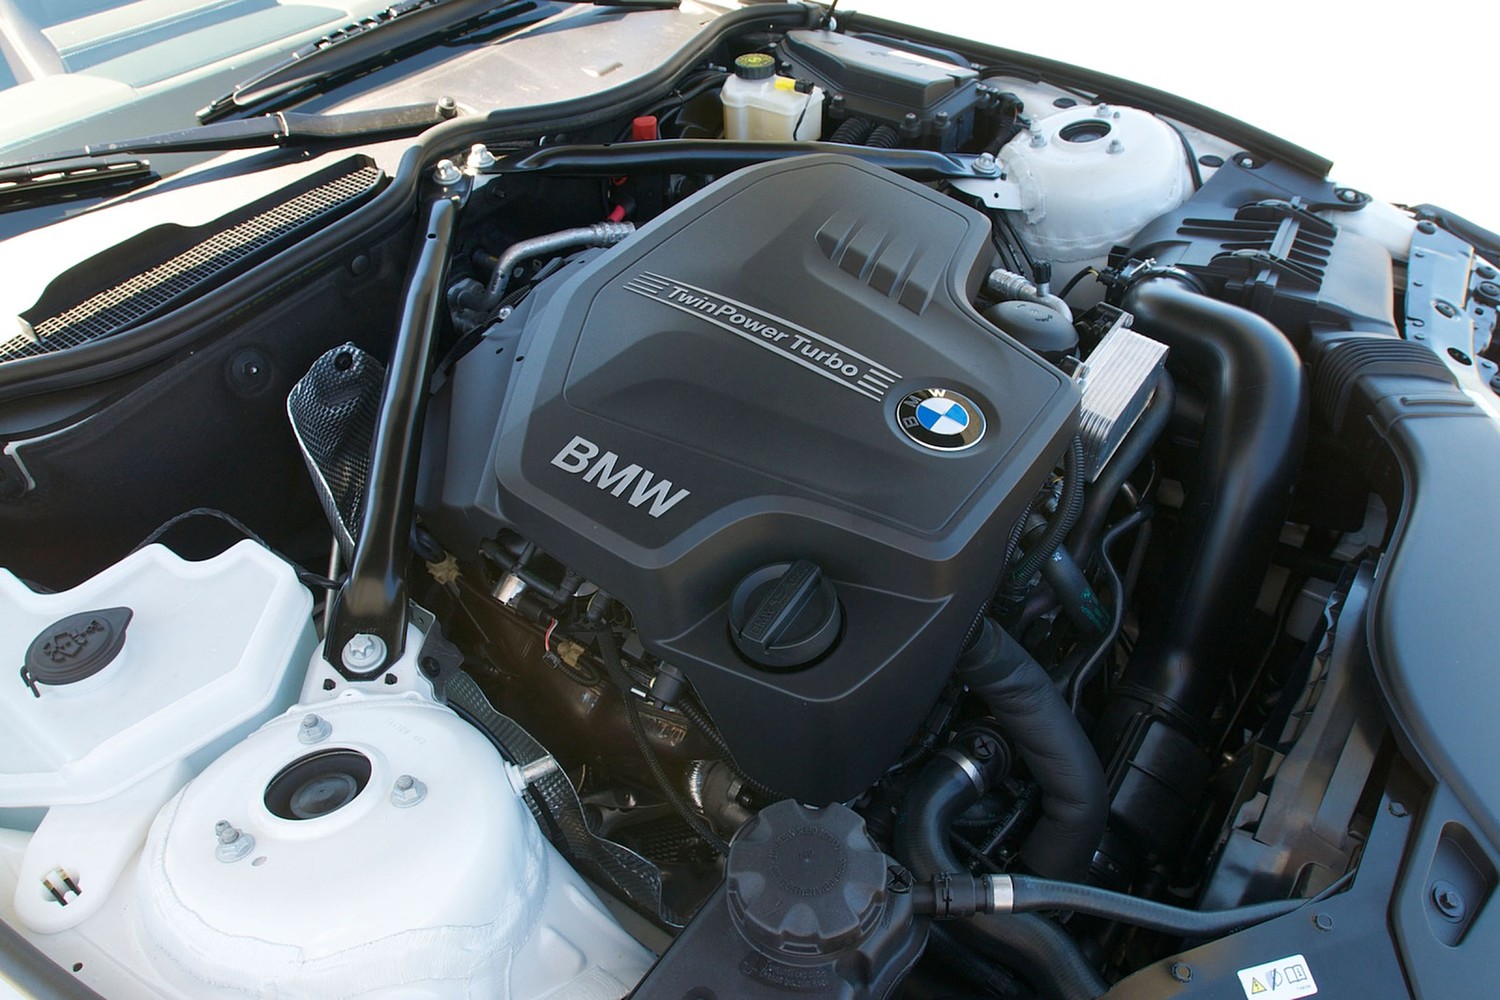 BMW Z4 sDrive28i 2.0L Turbocharged I4 Engine (2012 model year shown)